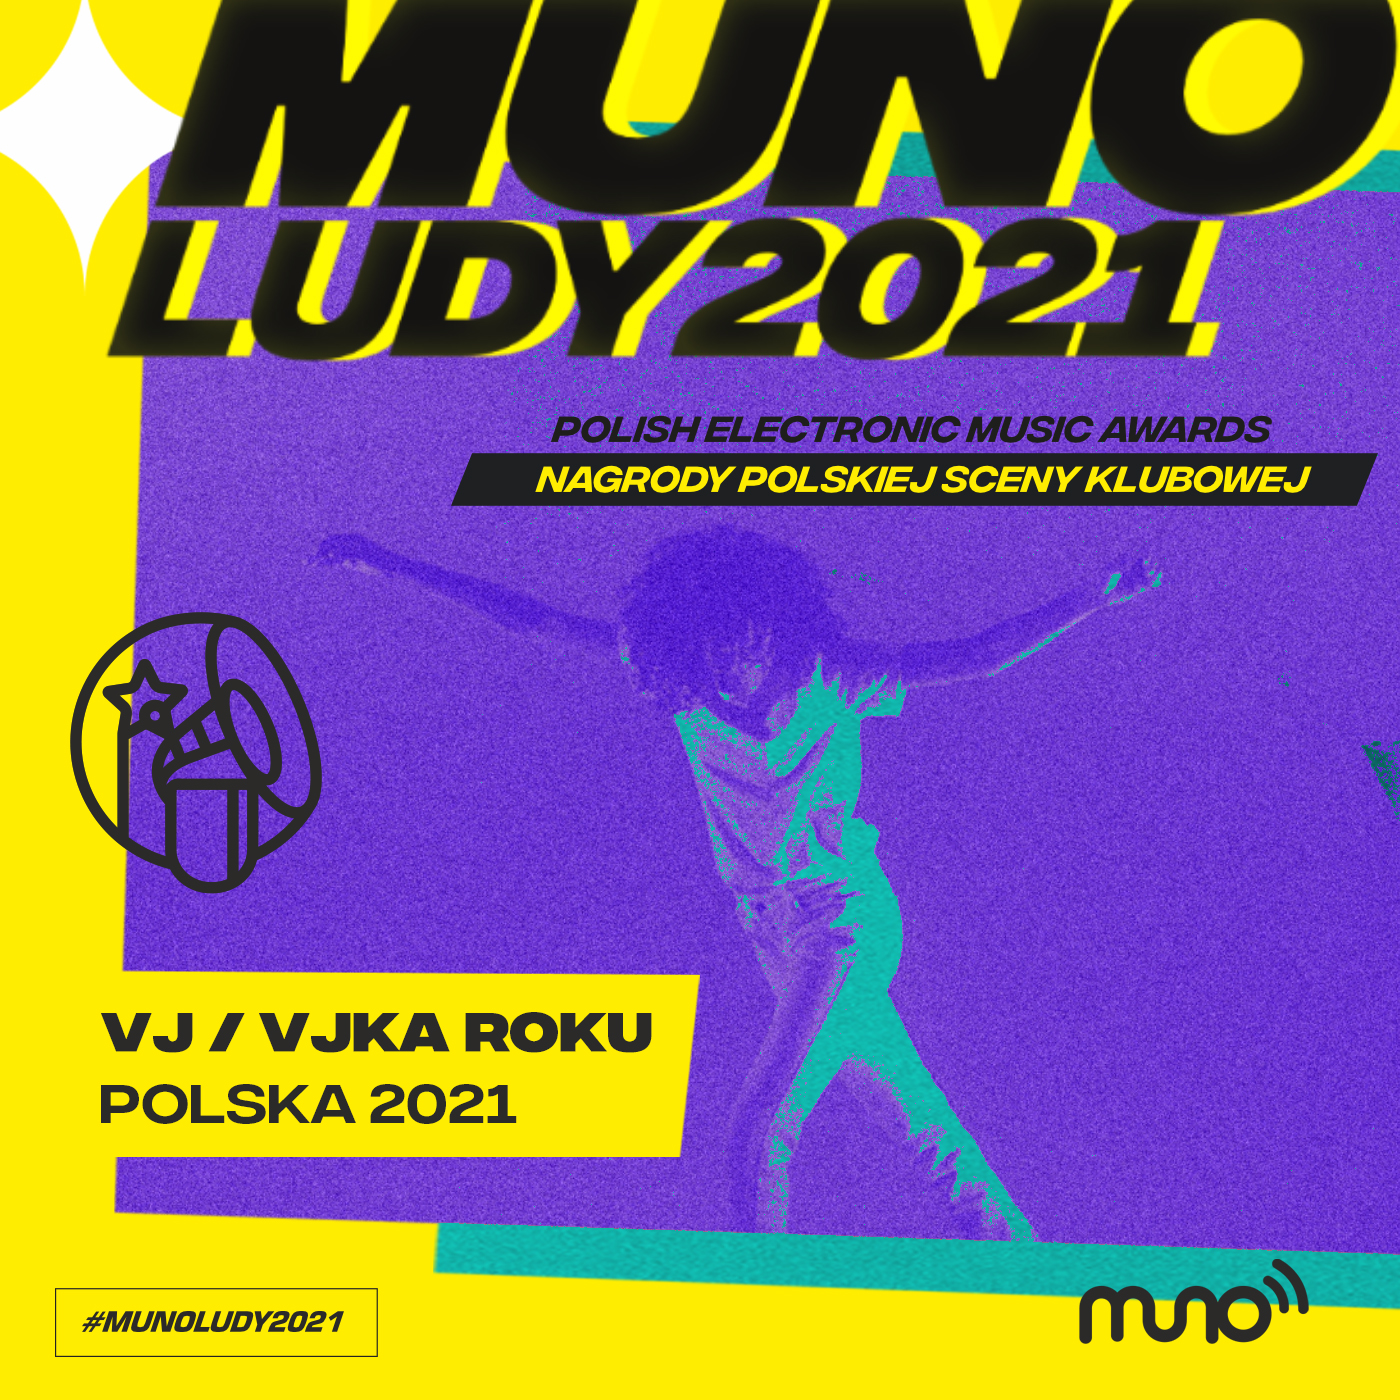 Munoludy 2021, VJ/VJ-KA ROKU